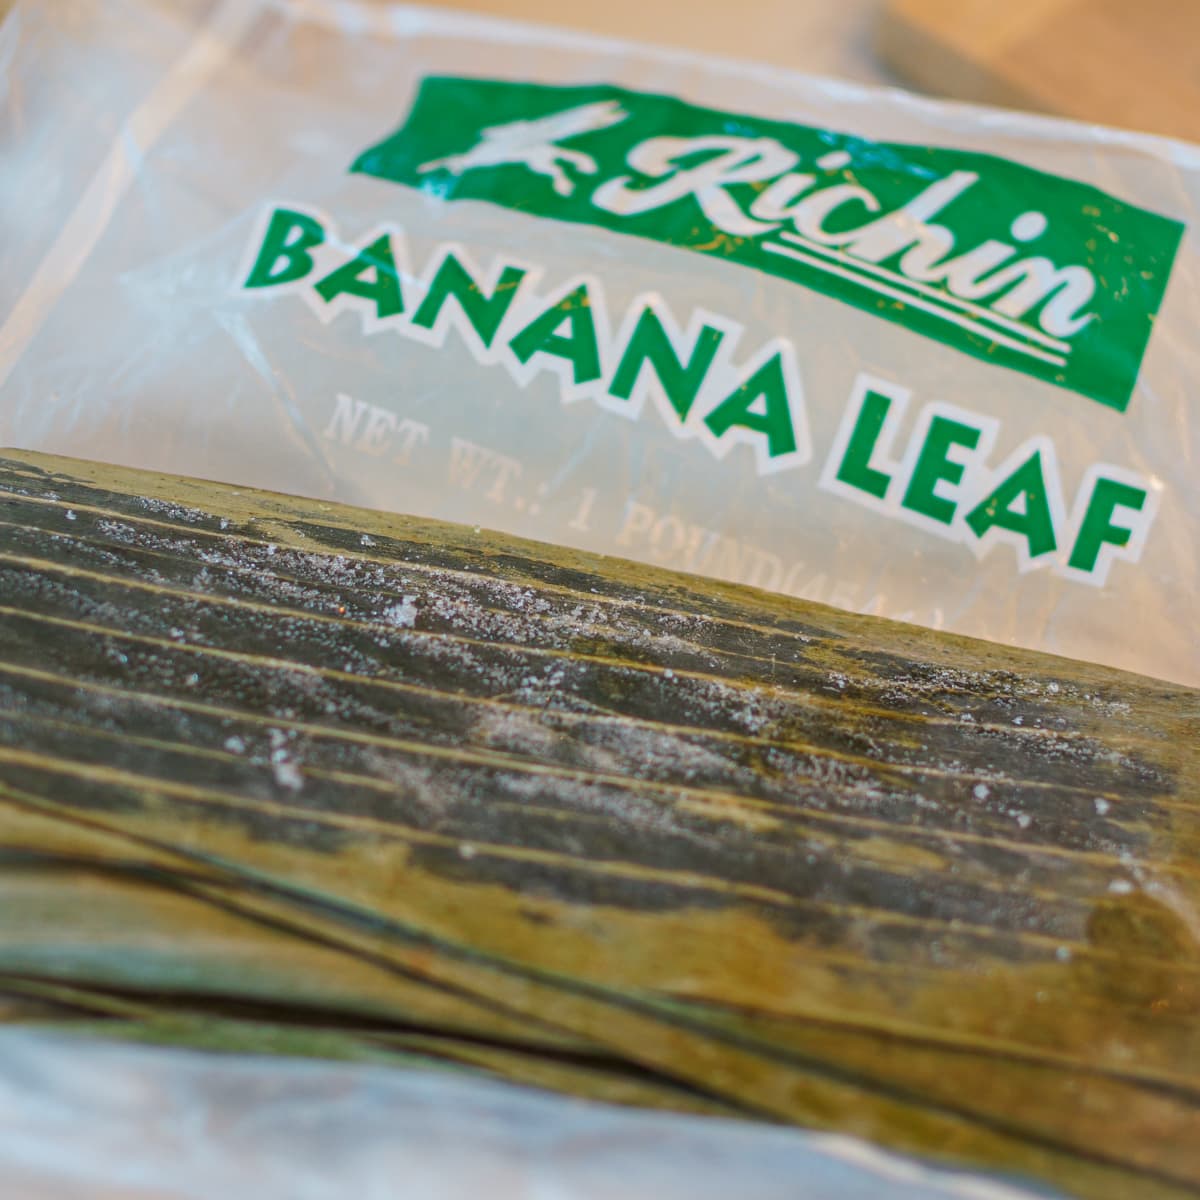 Banana leaves.